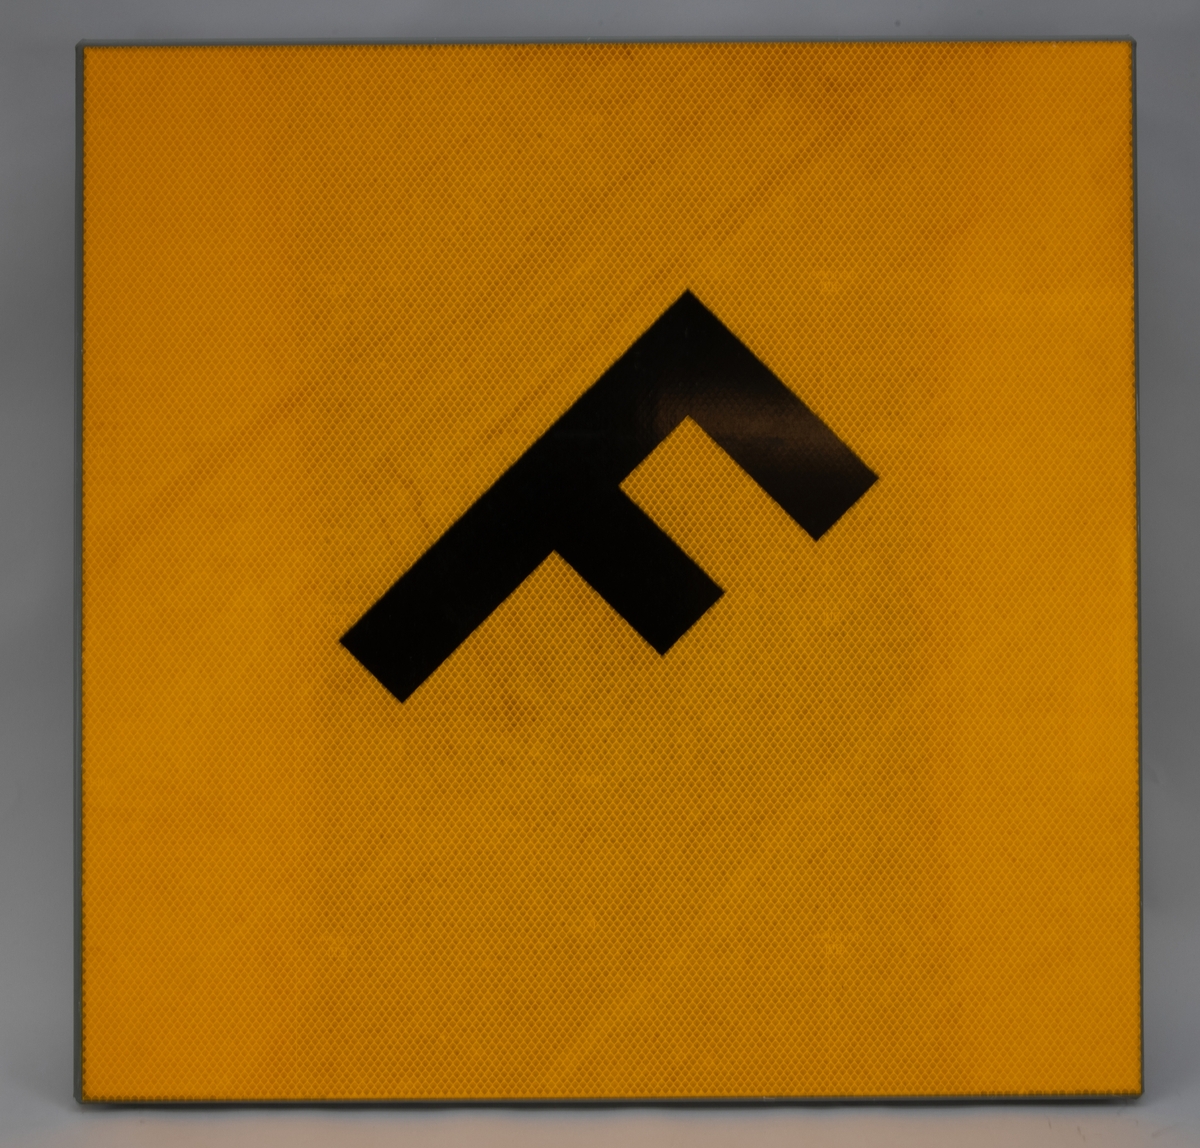 Rätvinklig rombformad tavla med bockade kanter. På baksidan finns fästen för stolpe. Framsidan är täckt av gul reflexfolie och har bokstaven "F" i svart i mitten.